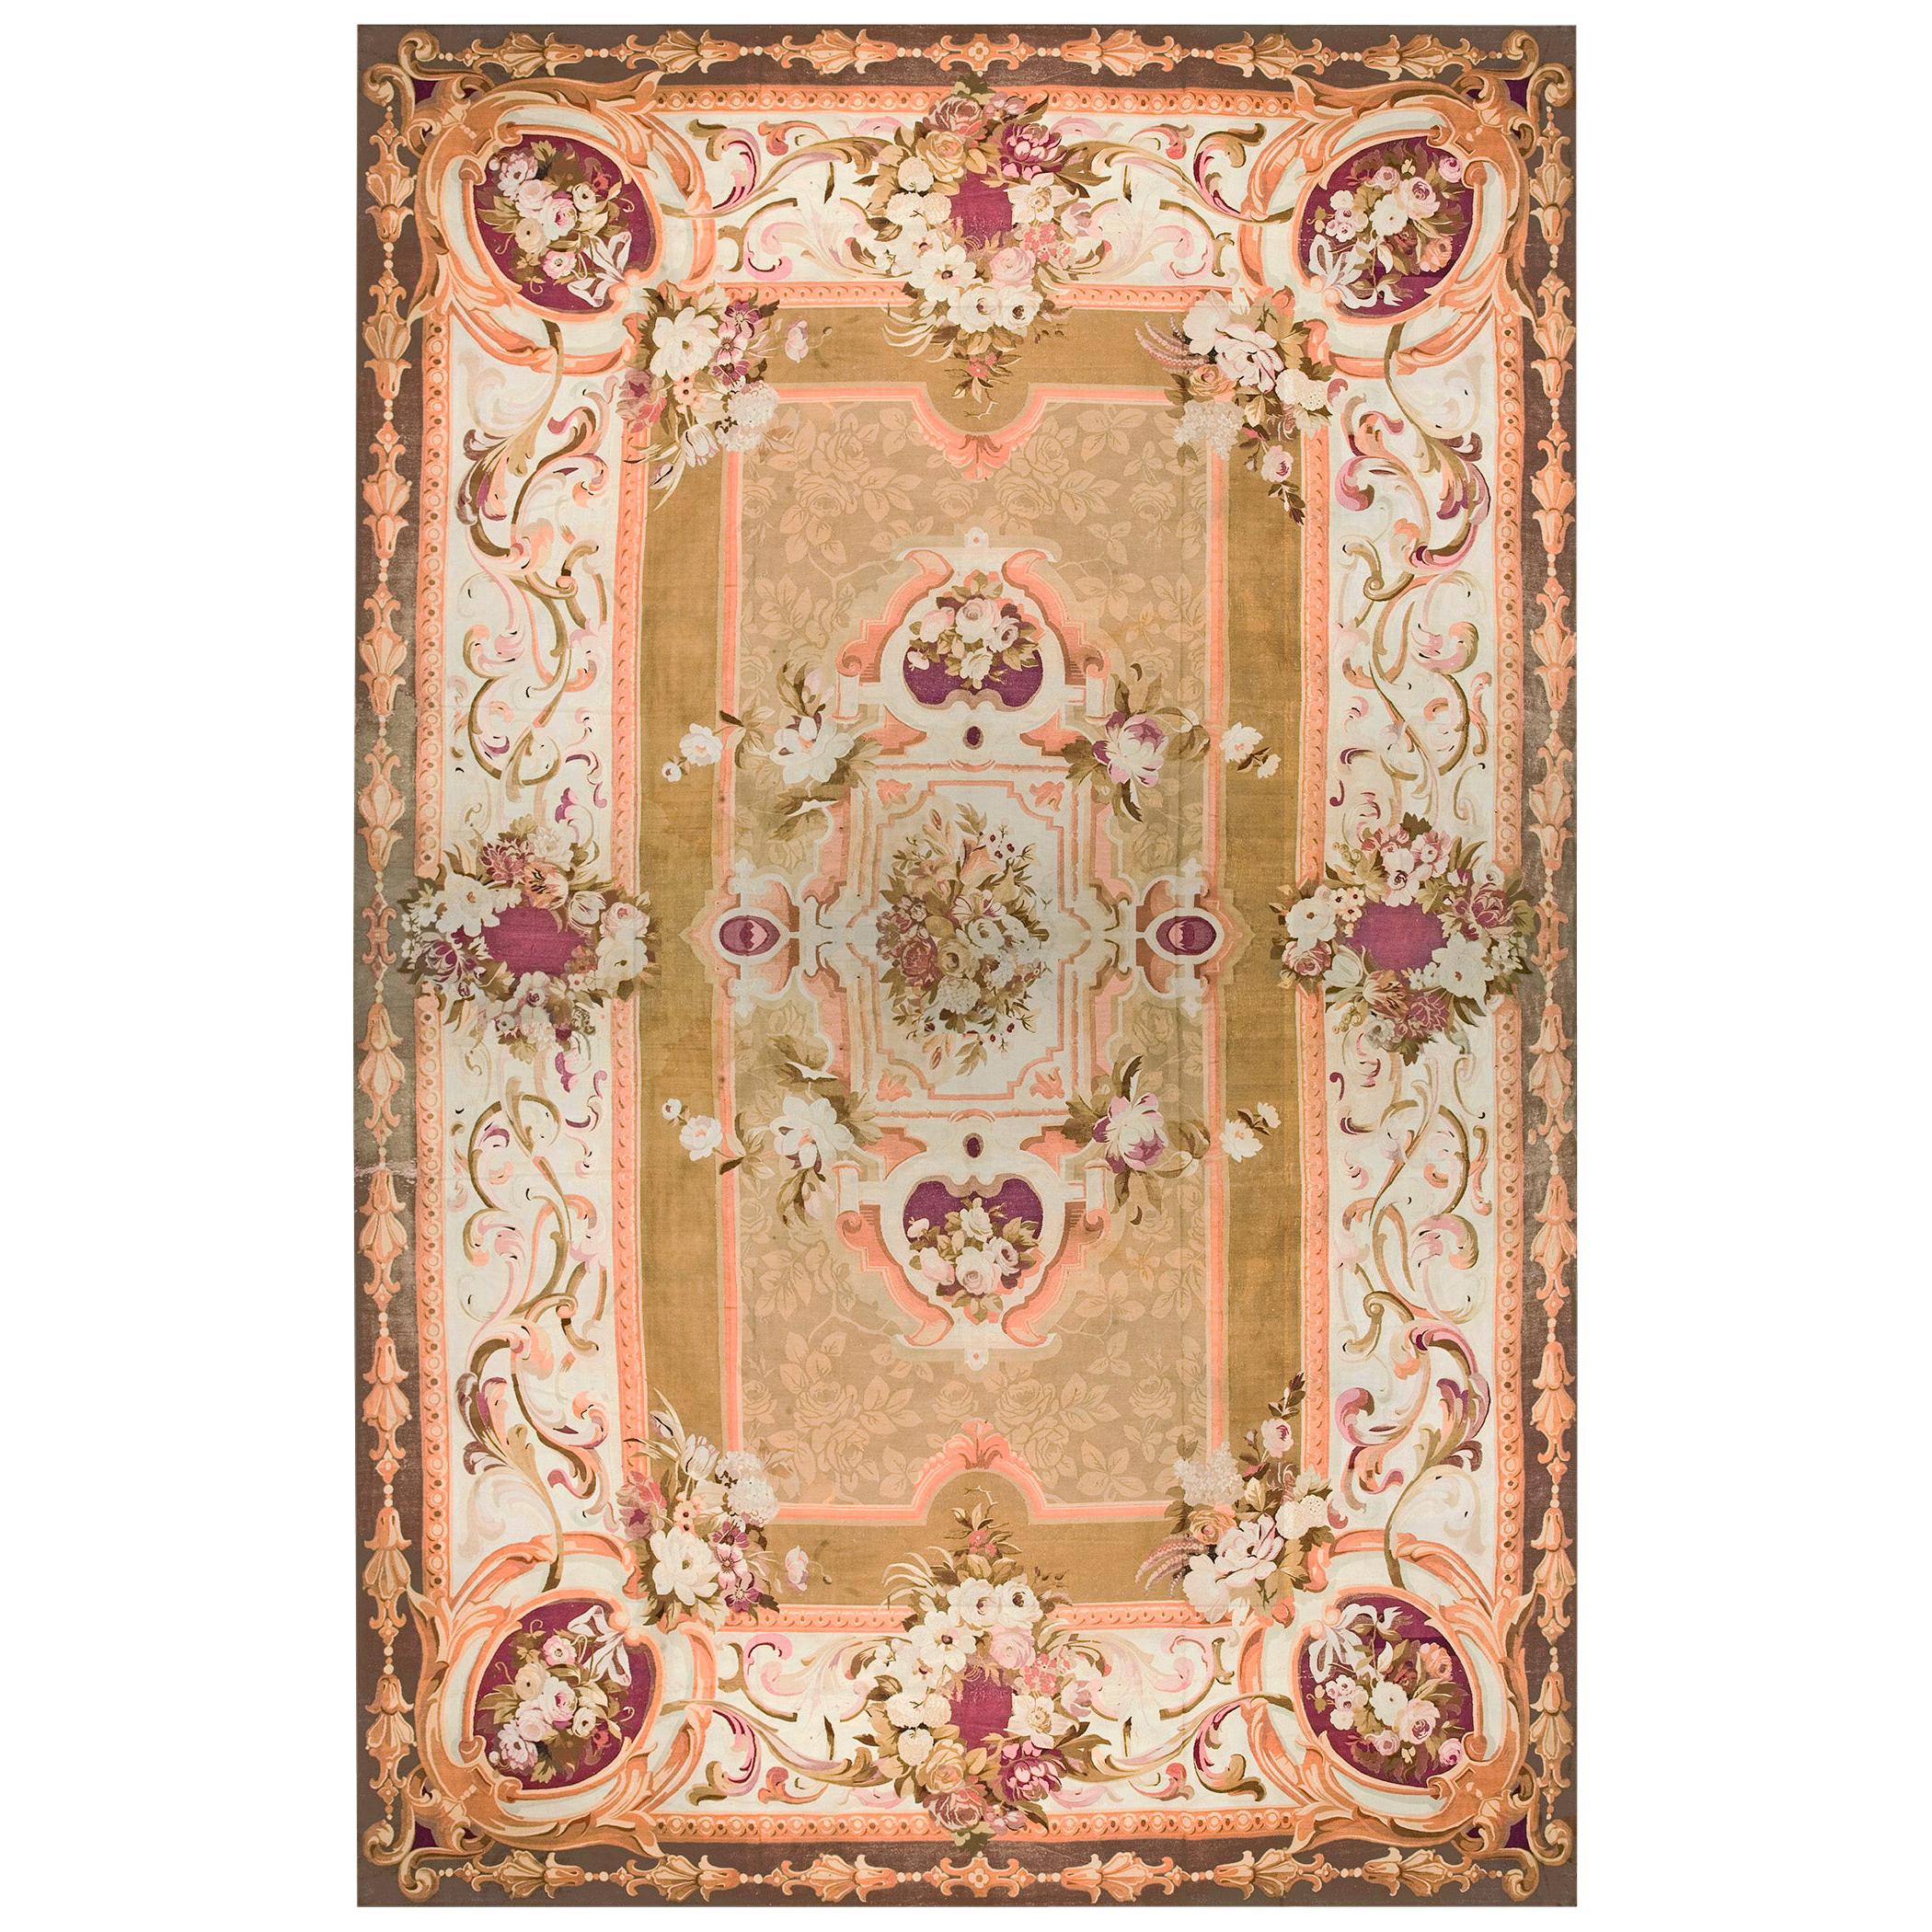 19th Century French Napoleon III Period Aubusson Carpet (15'6" x 22'-472 x 671)